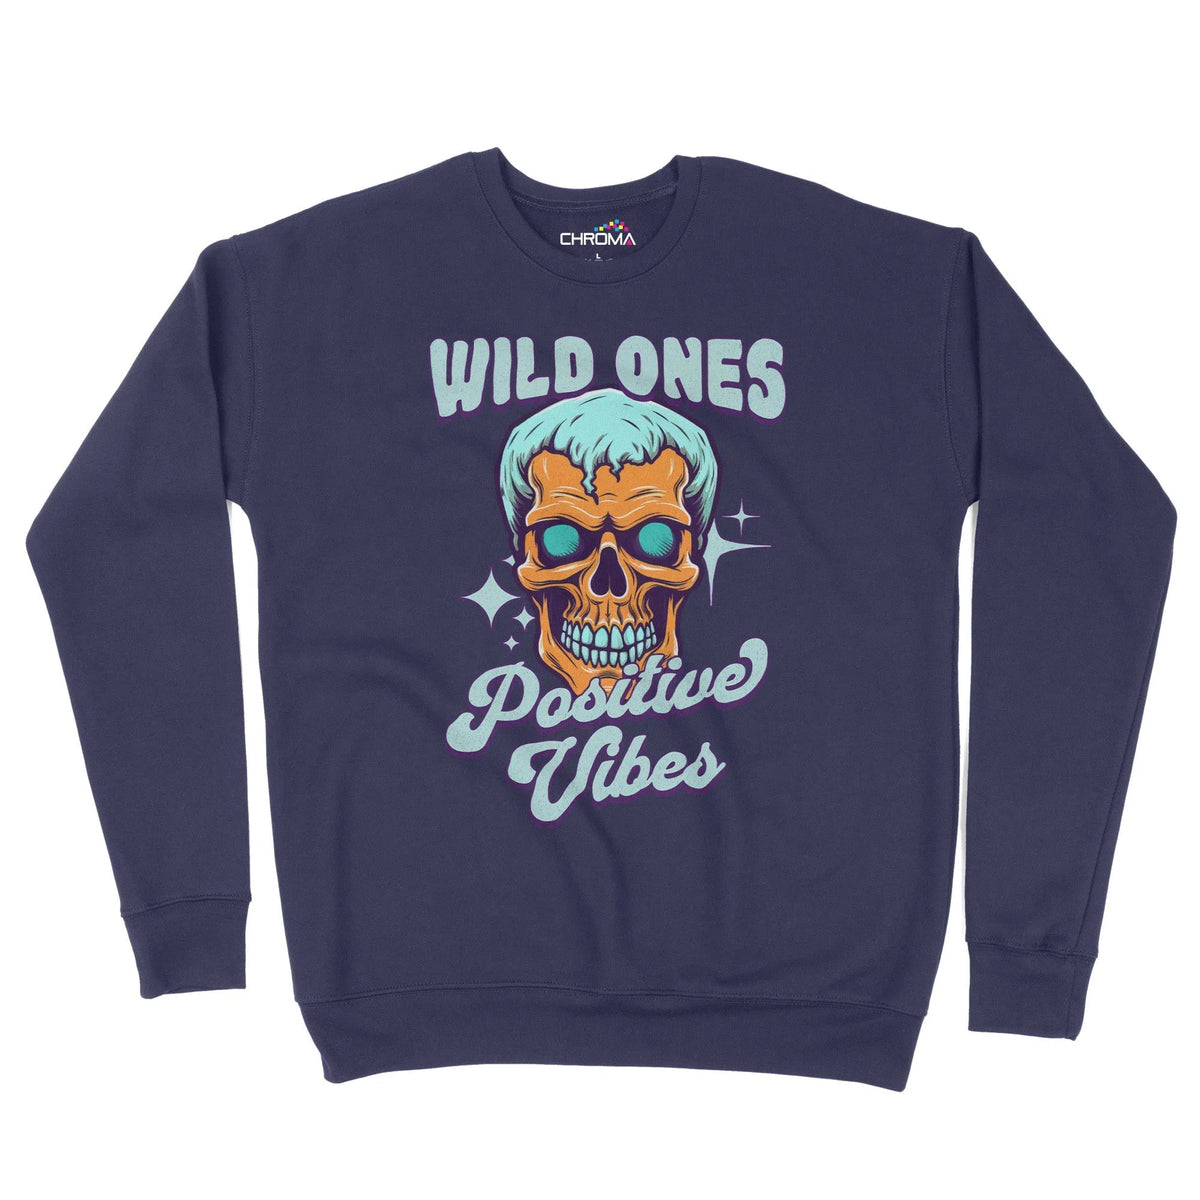 Wild Ones Positive Vibes Unisex Adult Sweatshirt Chroma Clothing